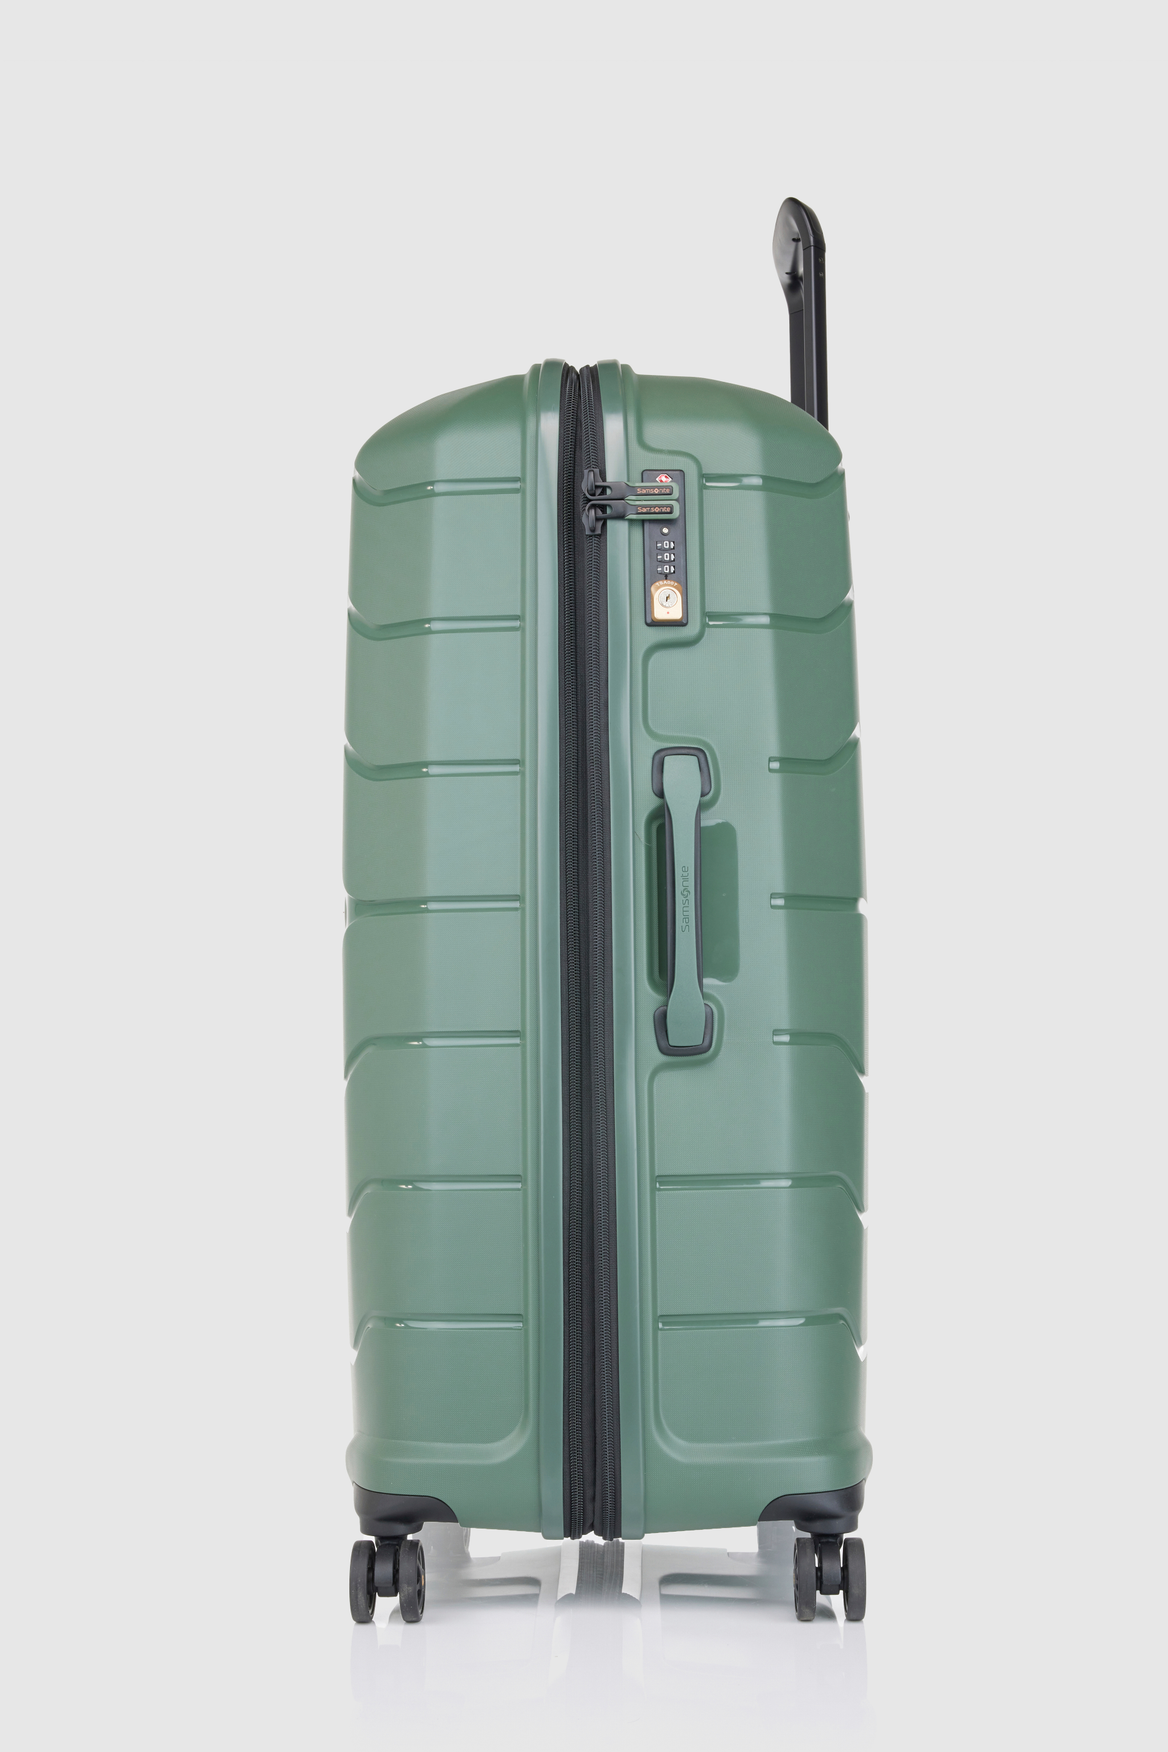 Samsonite Oc2lite 81cm Suitcase – Strandbags Australia